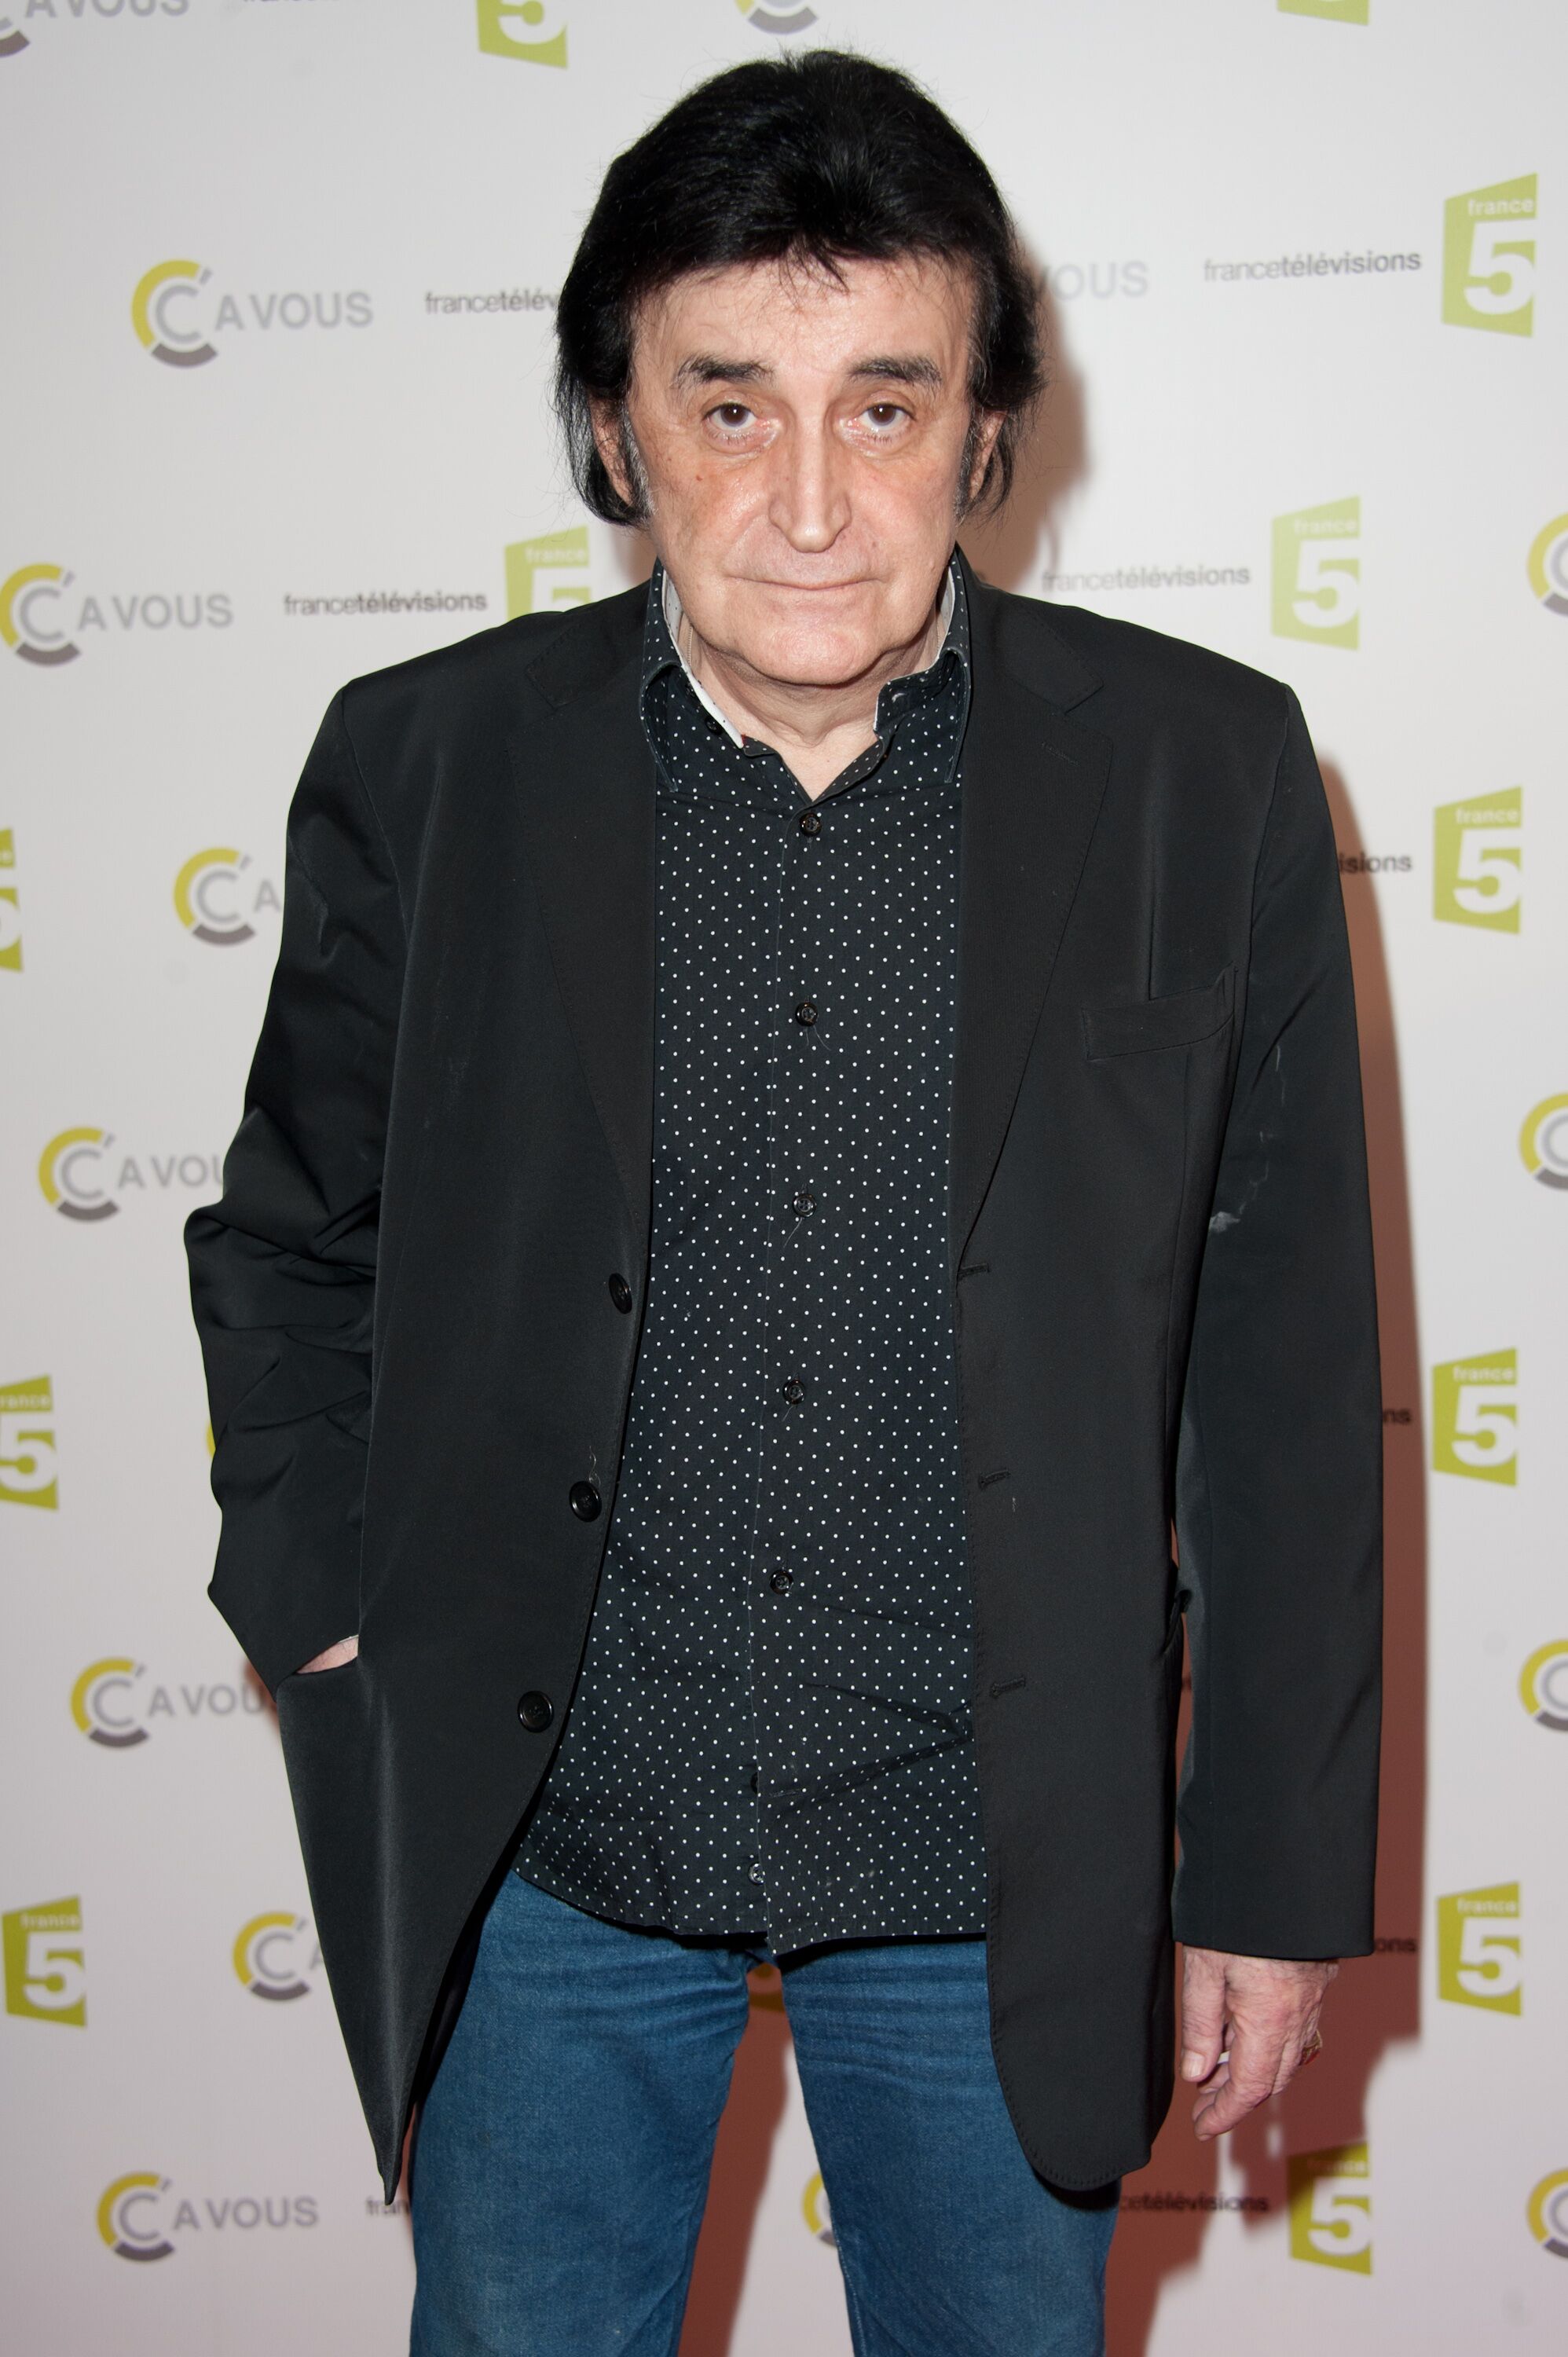 Dick Rivers participe à la célébration de la 500e édition de "C a Vous" le 22 mars 2012 à Paris, France. | Photo : Getty Images